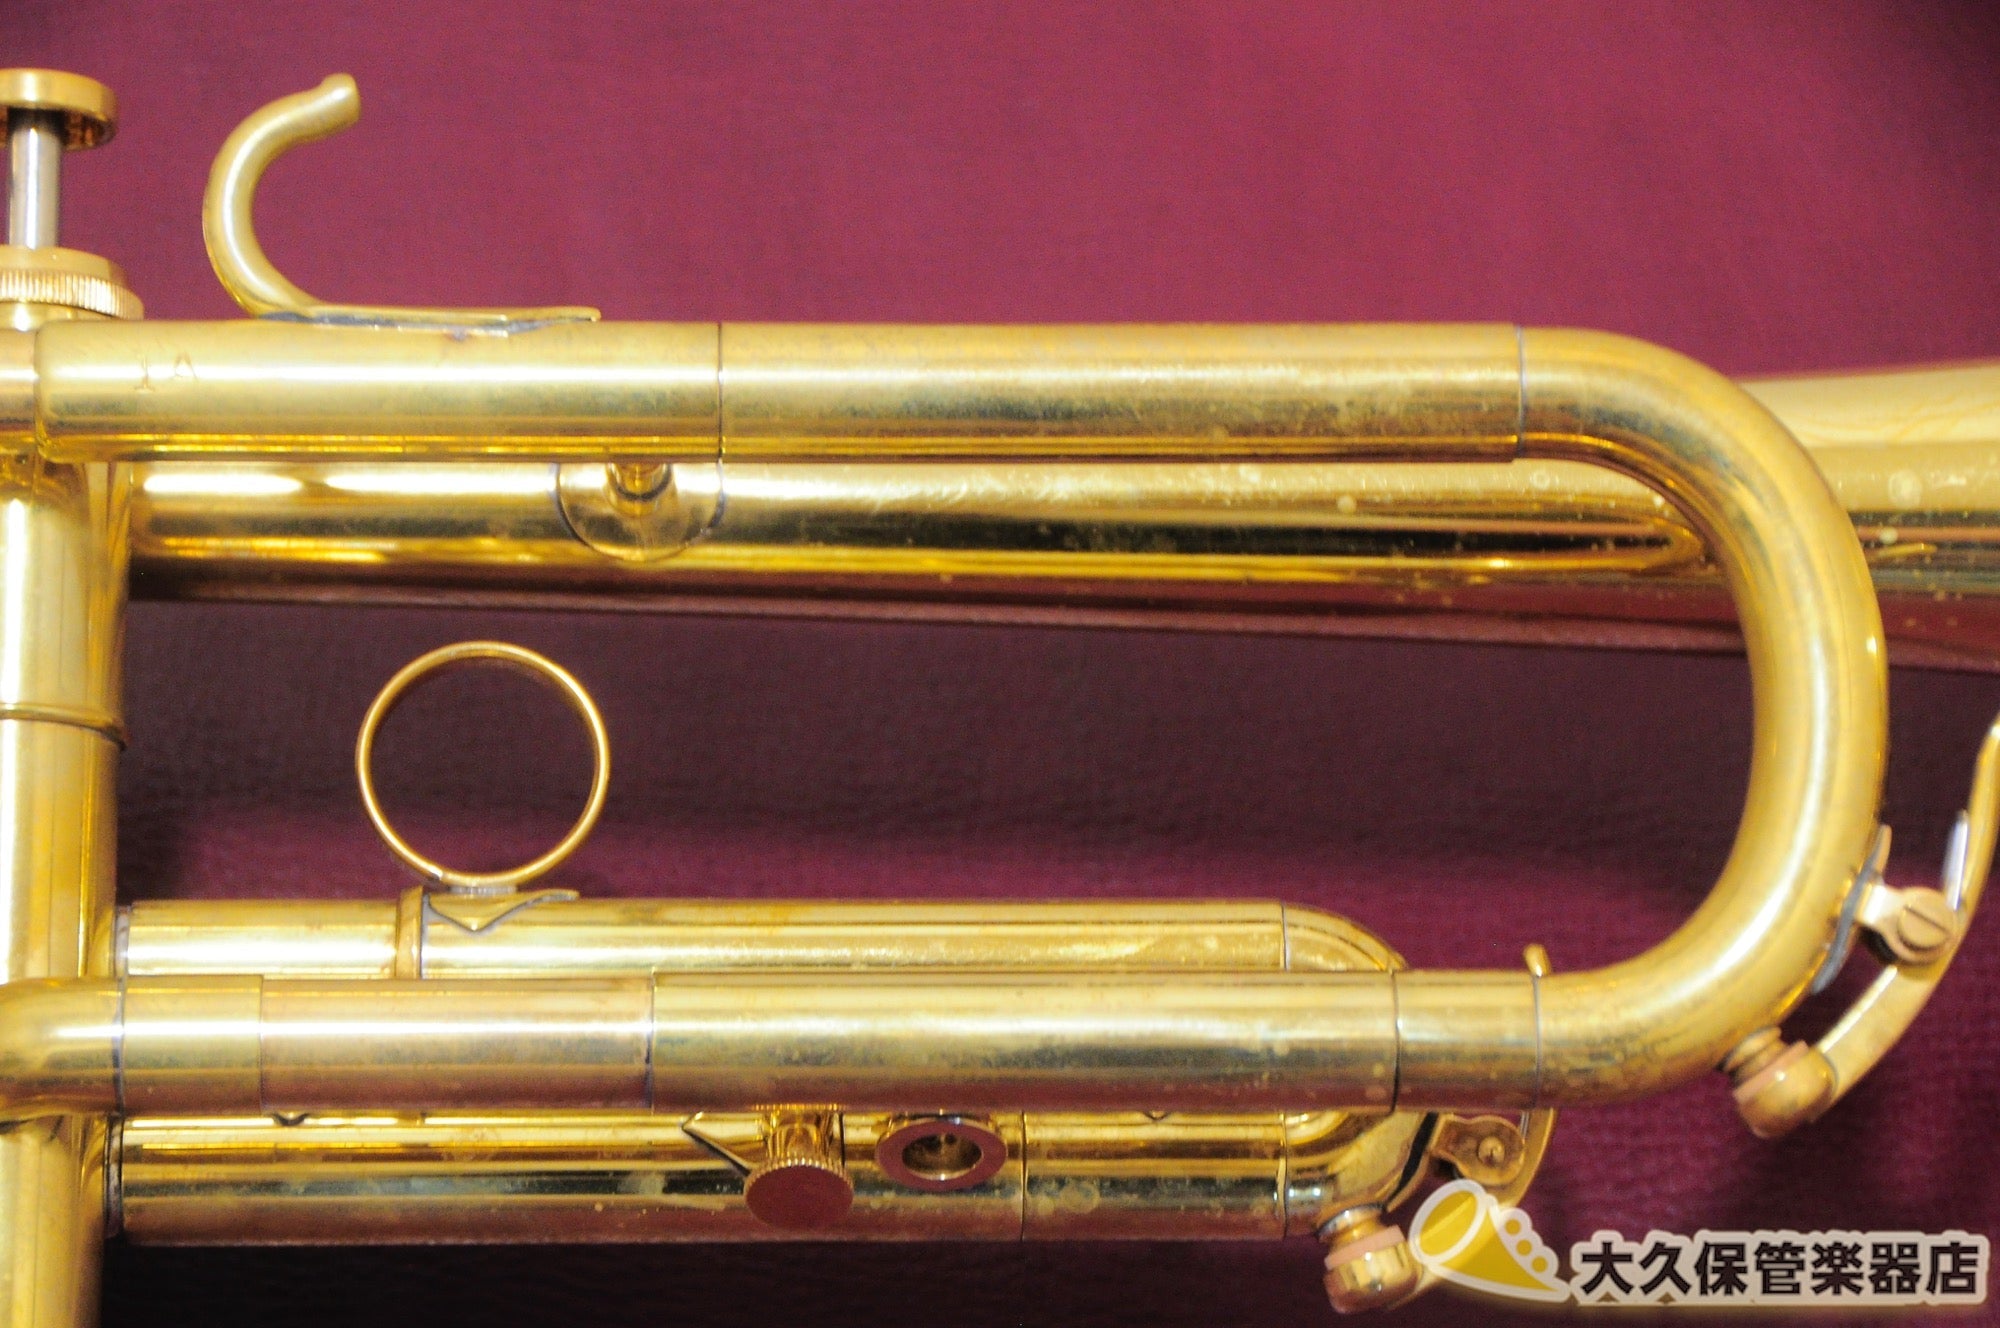 得価限定SALERoy Lawler trumpet 替ベル３本付 稀少逸品 コンディション良好 本体